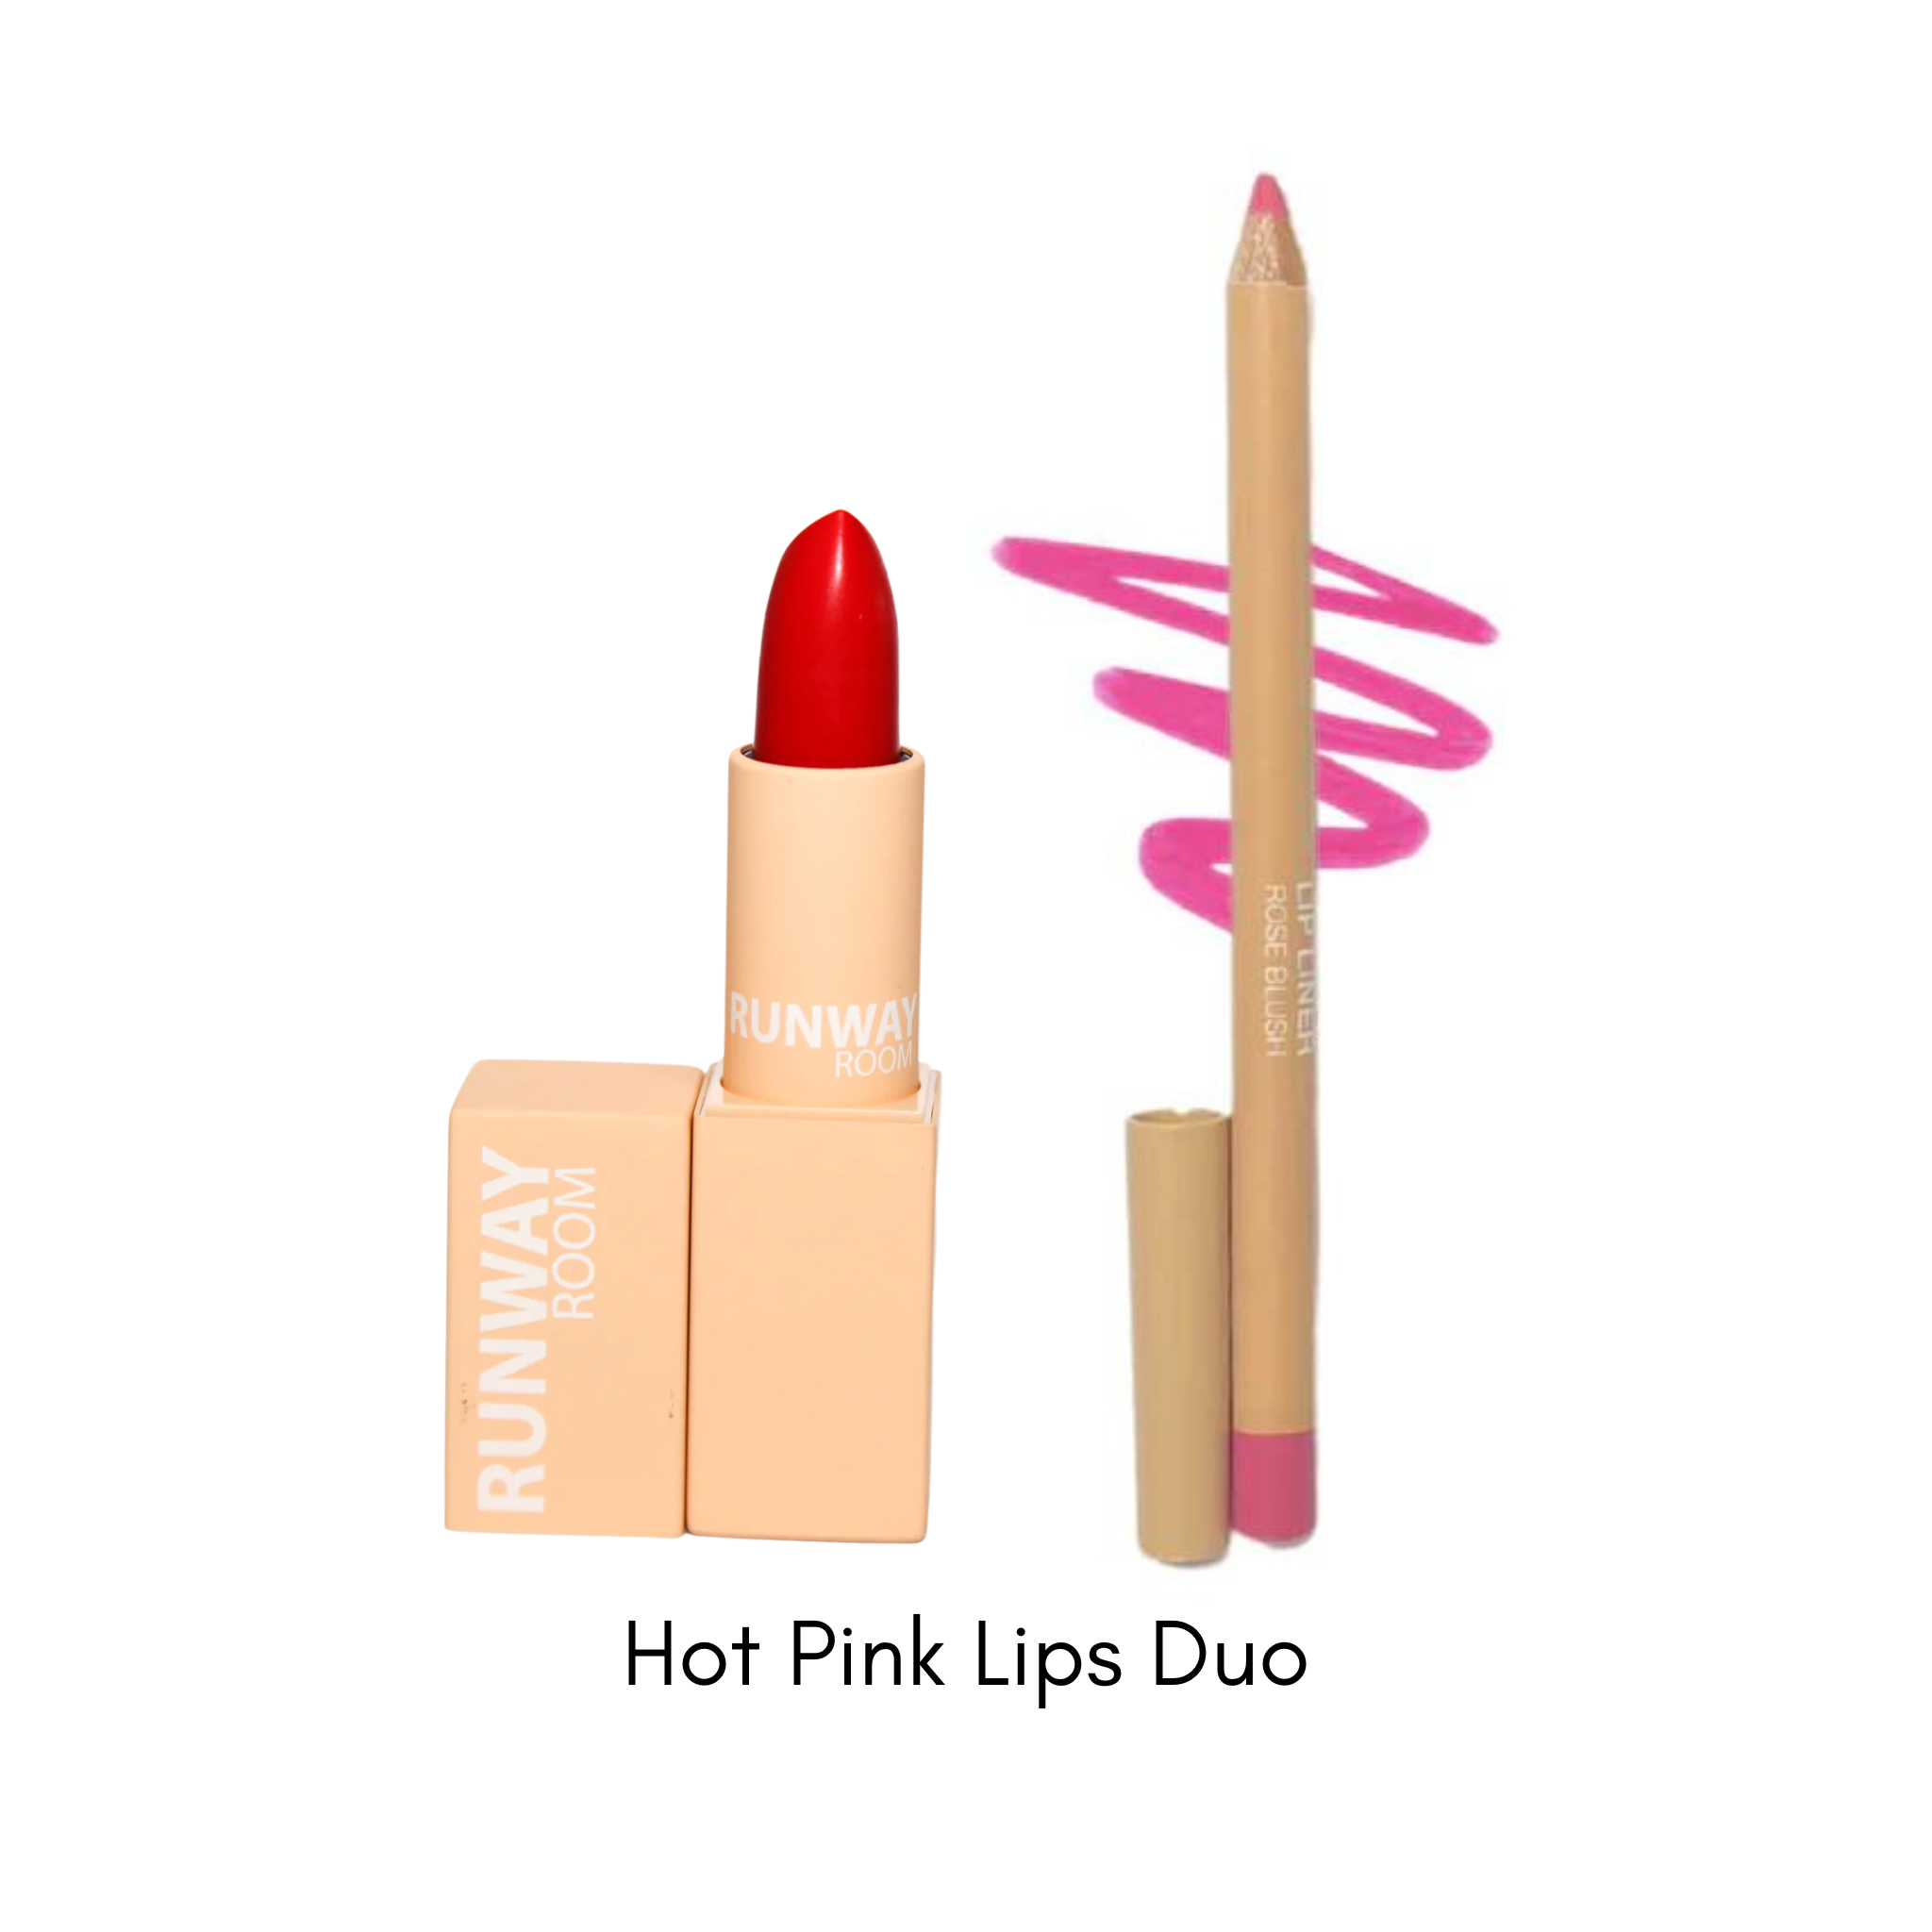 Hot Pink Lips Duo